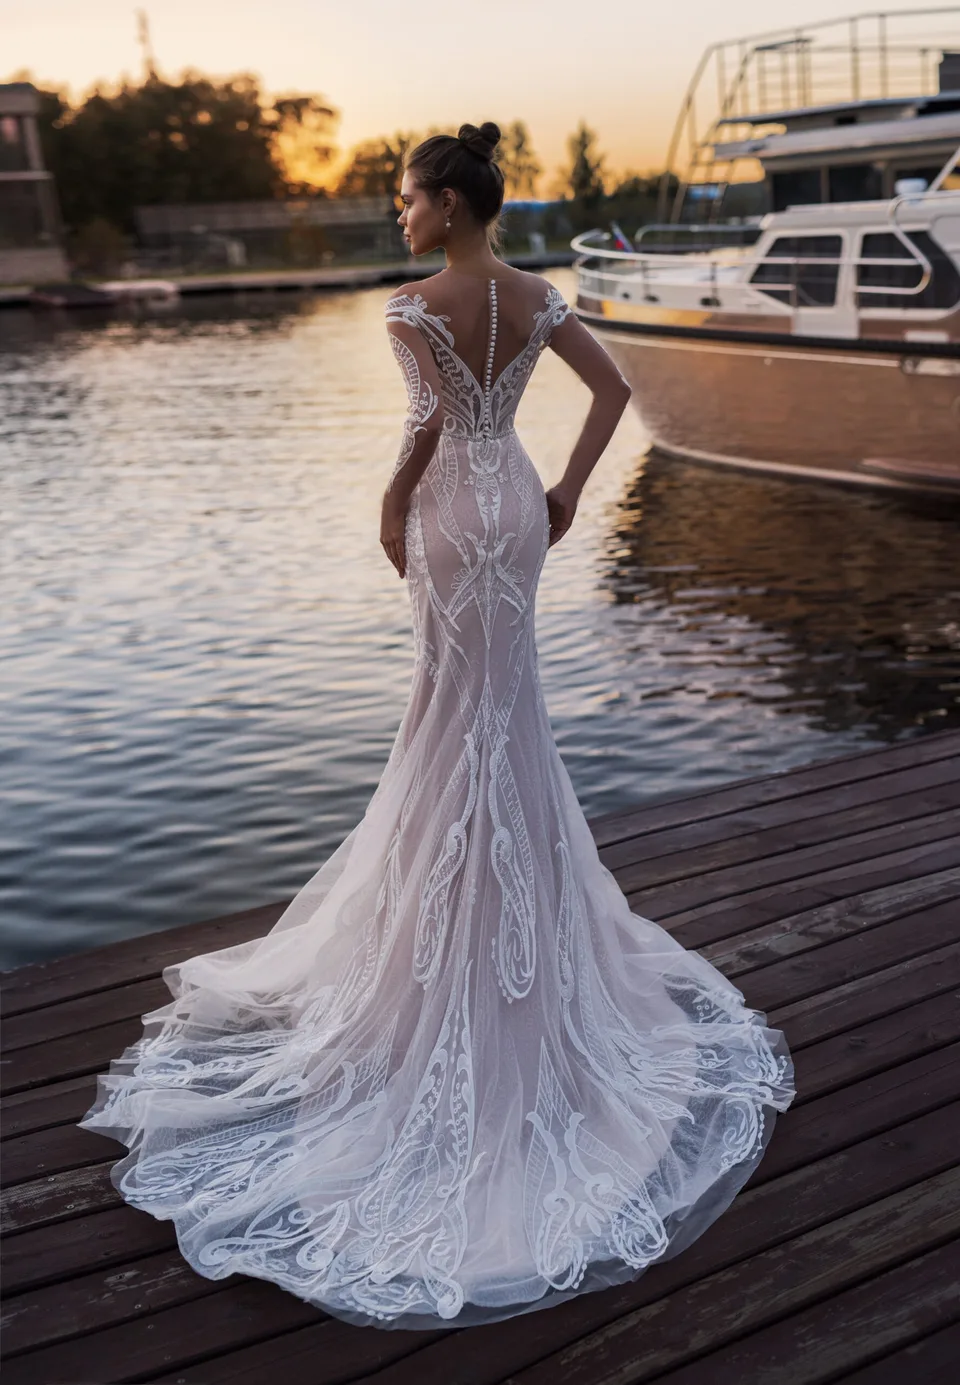 Свадебное платье мечты